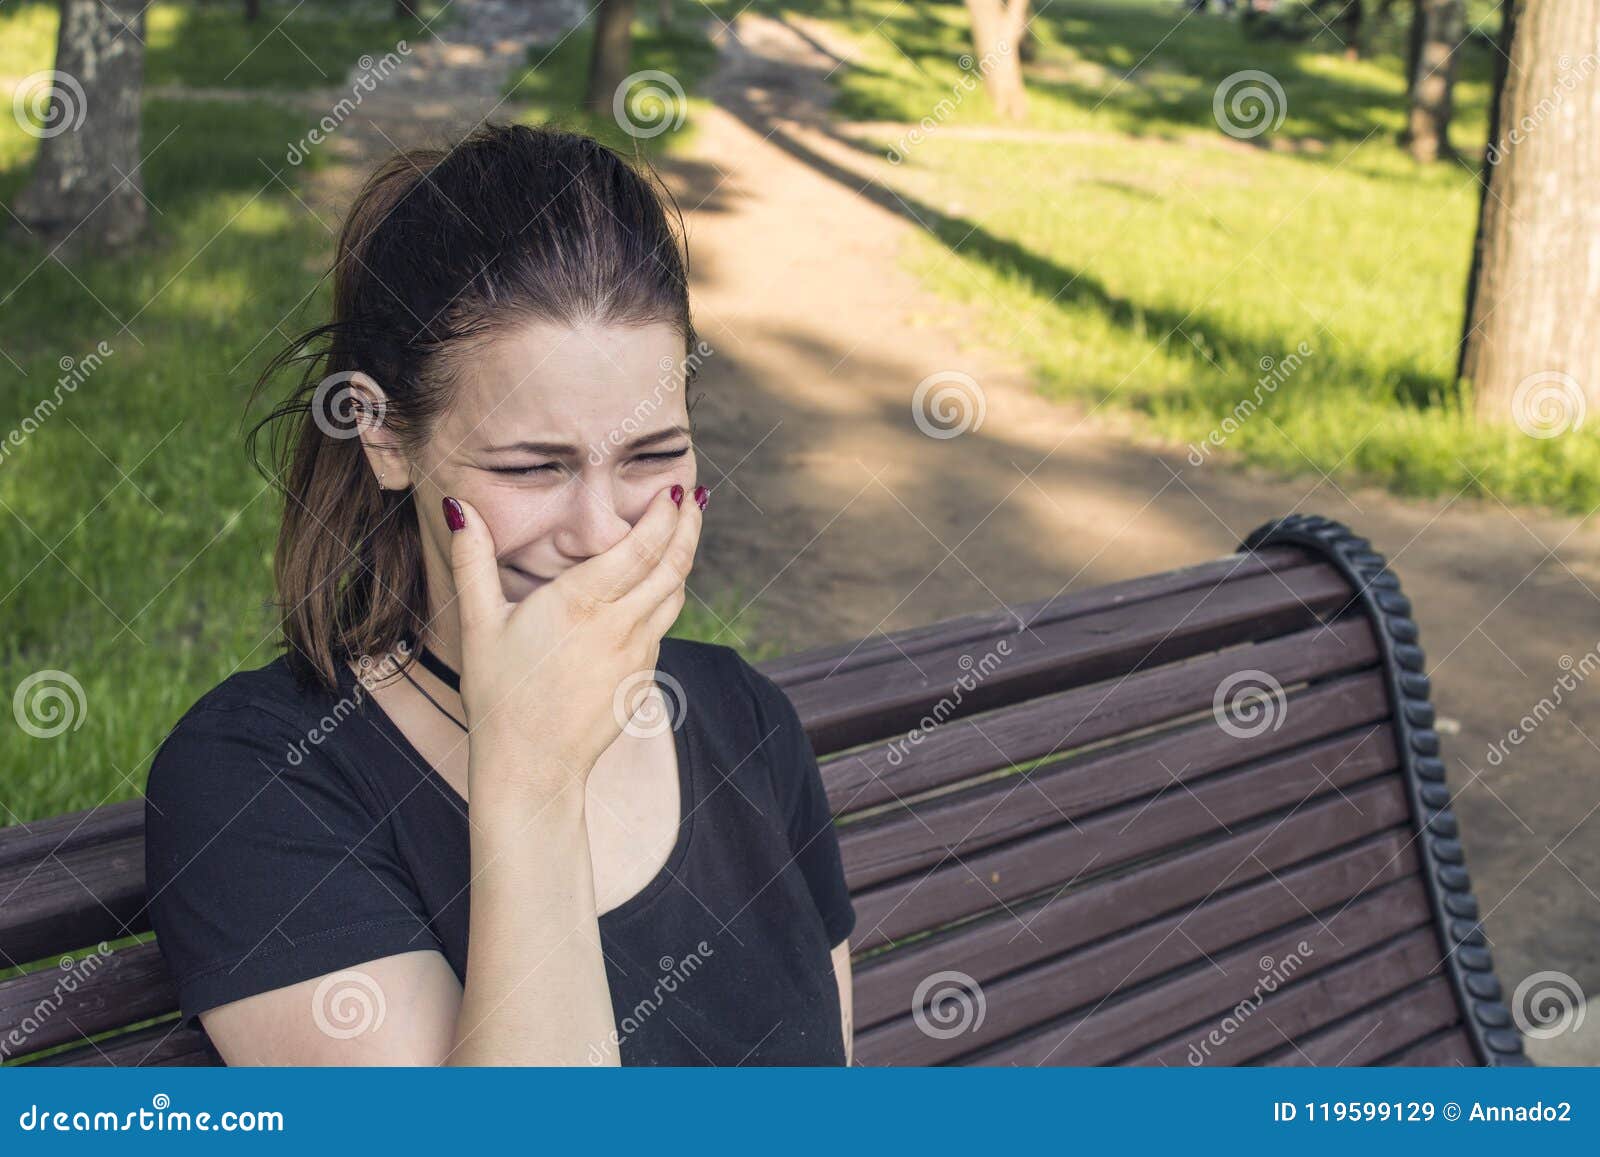 Сидит какое лицо. Девушка плачет в парке. Девушка плачущая на скамейки. Девушка плачет на скамейке в парке. Девушка плачет на скамейке.